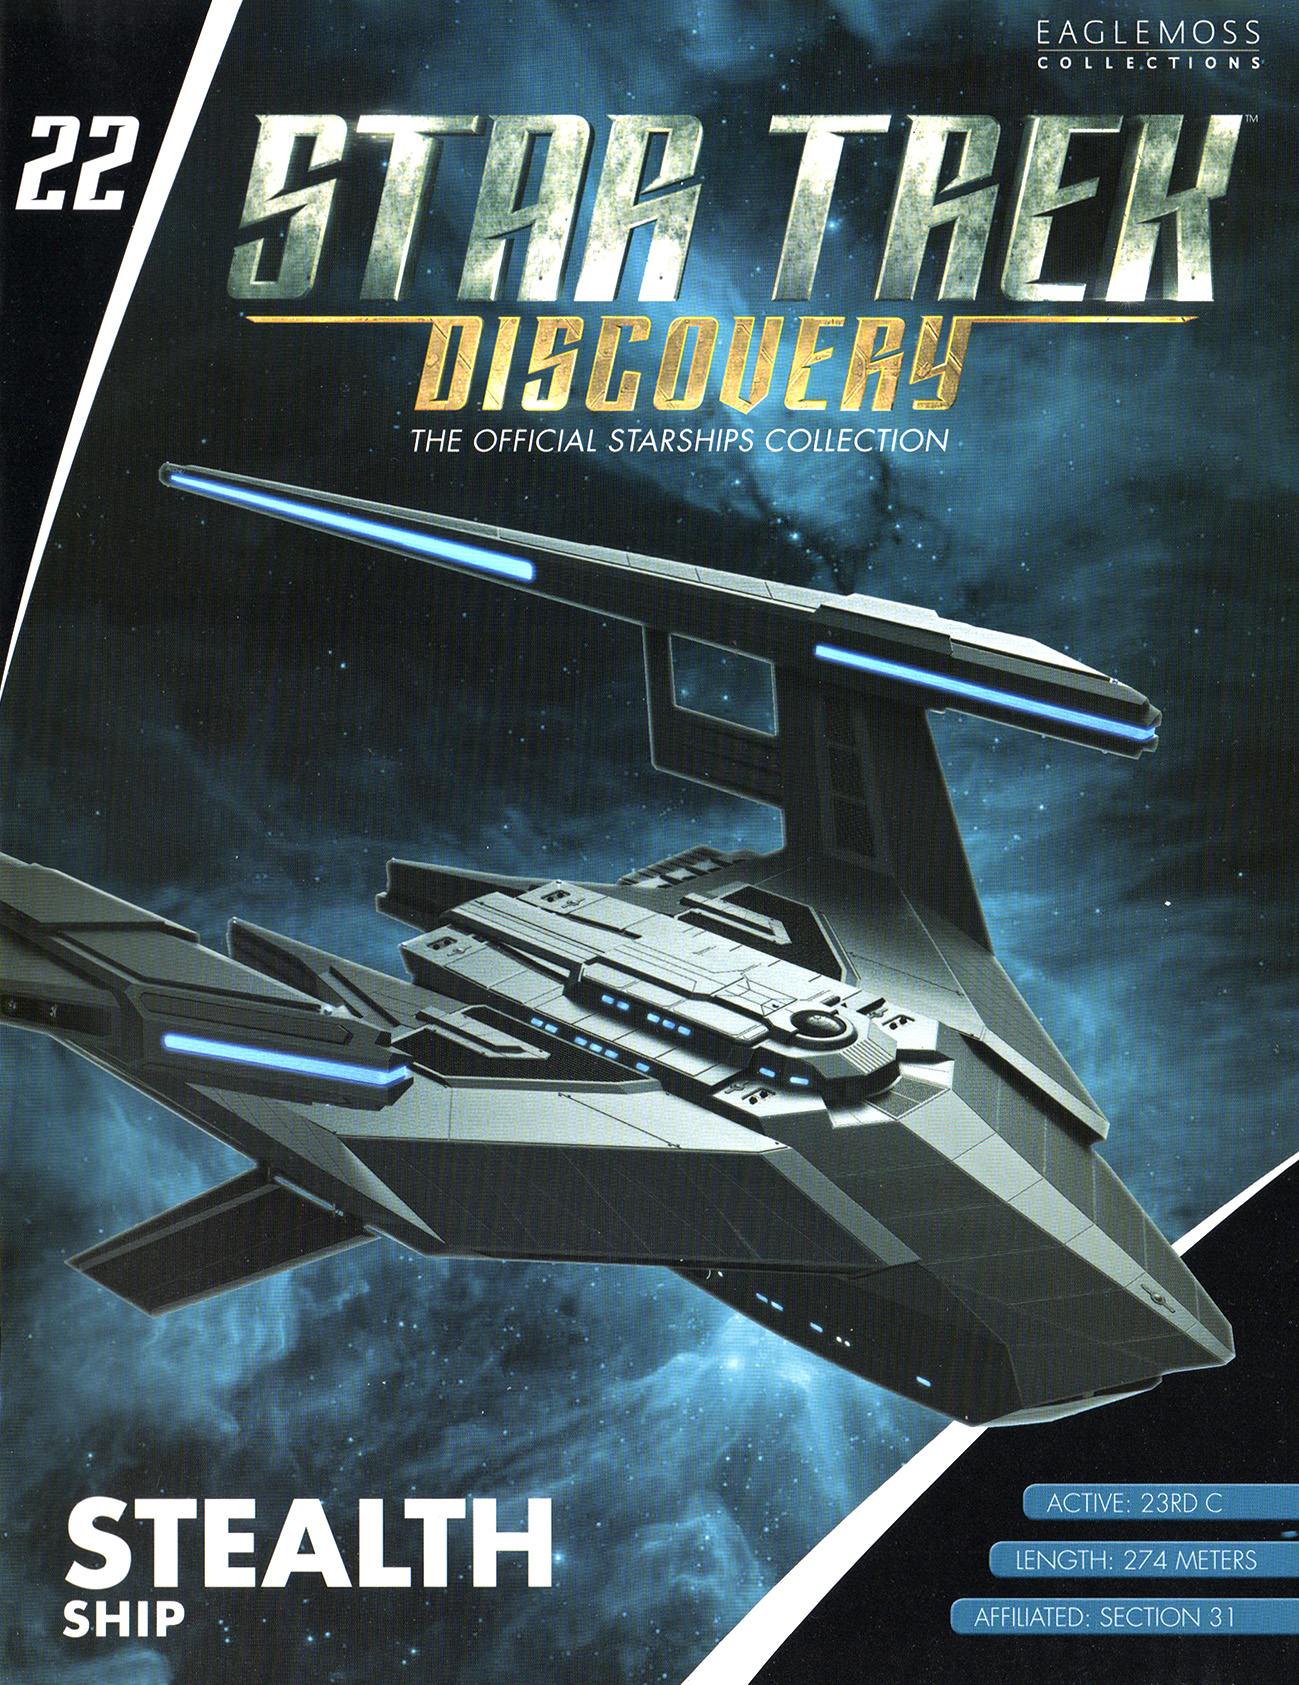 Eaglemoss Star Trek Starships Discovery Issue 22